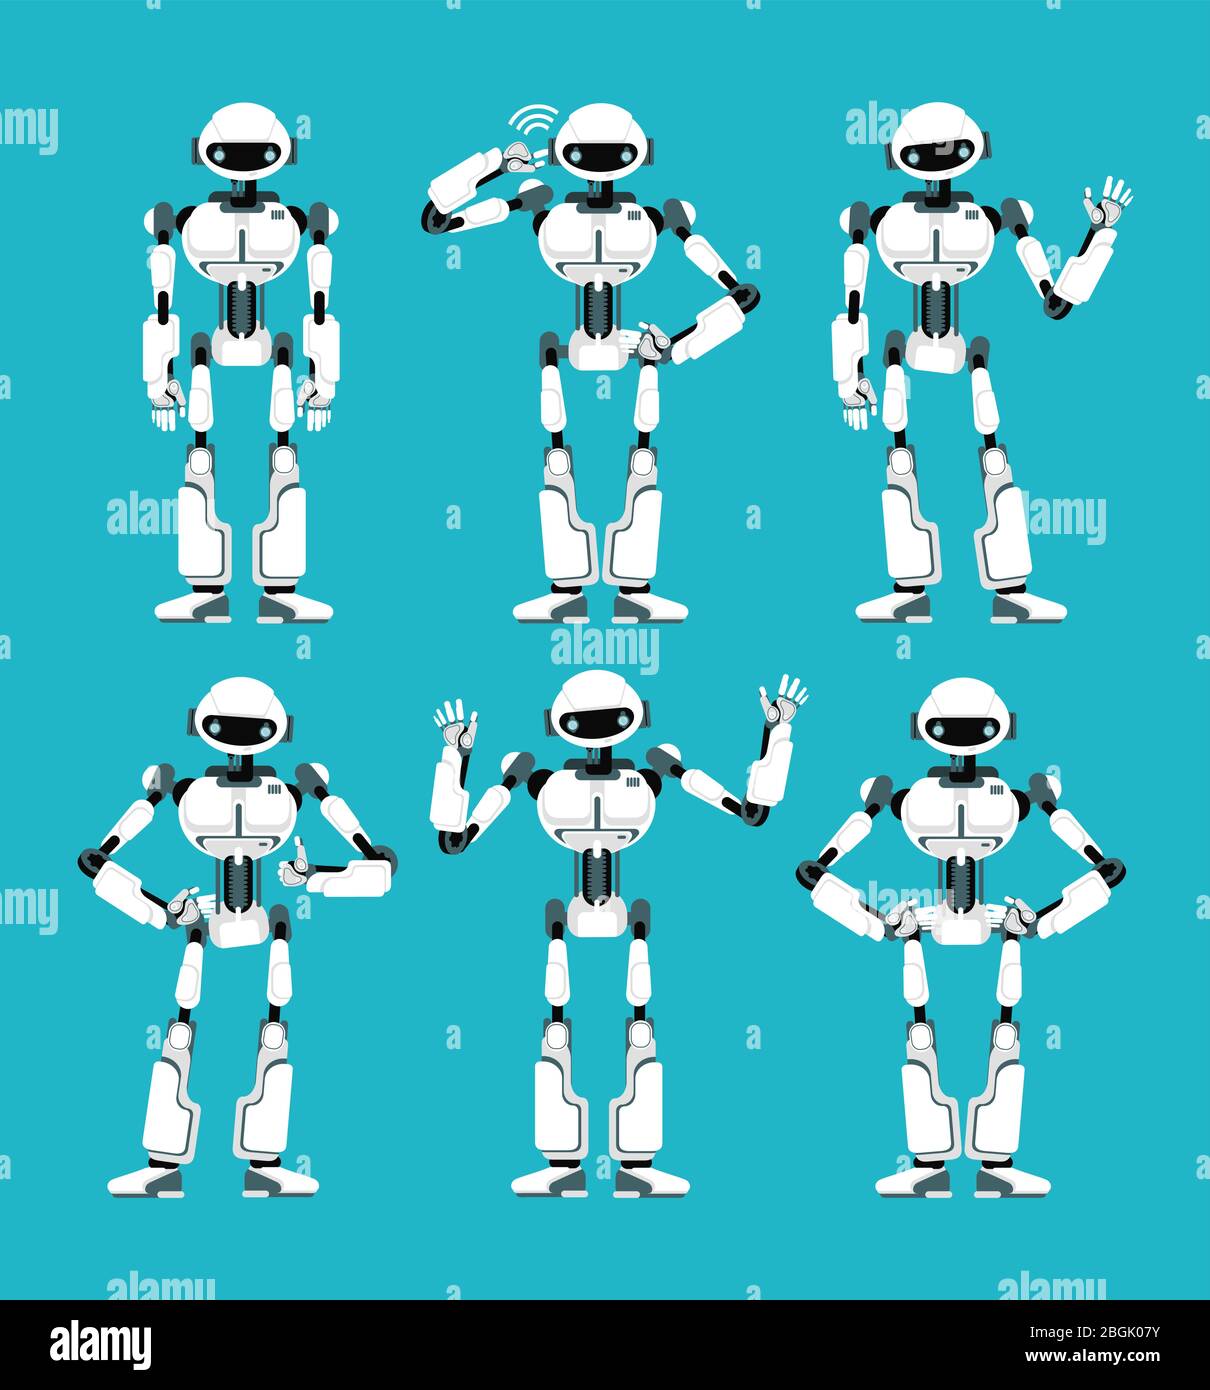 Spaceman Roboter android in verschiedenen Posen. Niedlichen Cartoon futuristischen humanoiden Charakter gesetzt. Cyborg Roboter-Maschine, Spielzeug futuristisch mechanisch. Vektorgrafik Stock Vektor